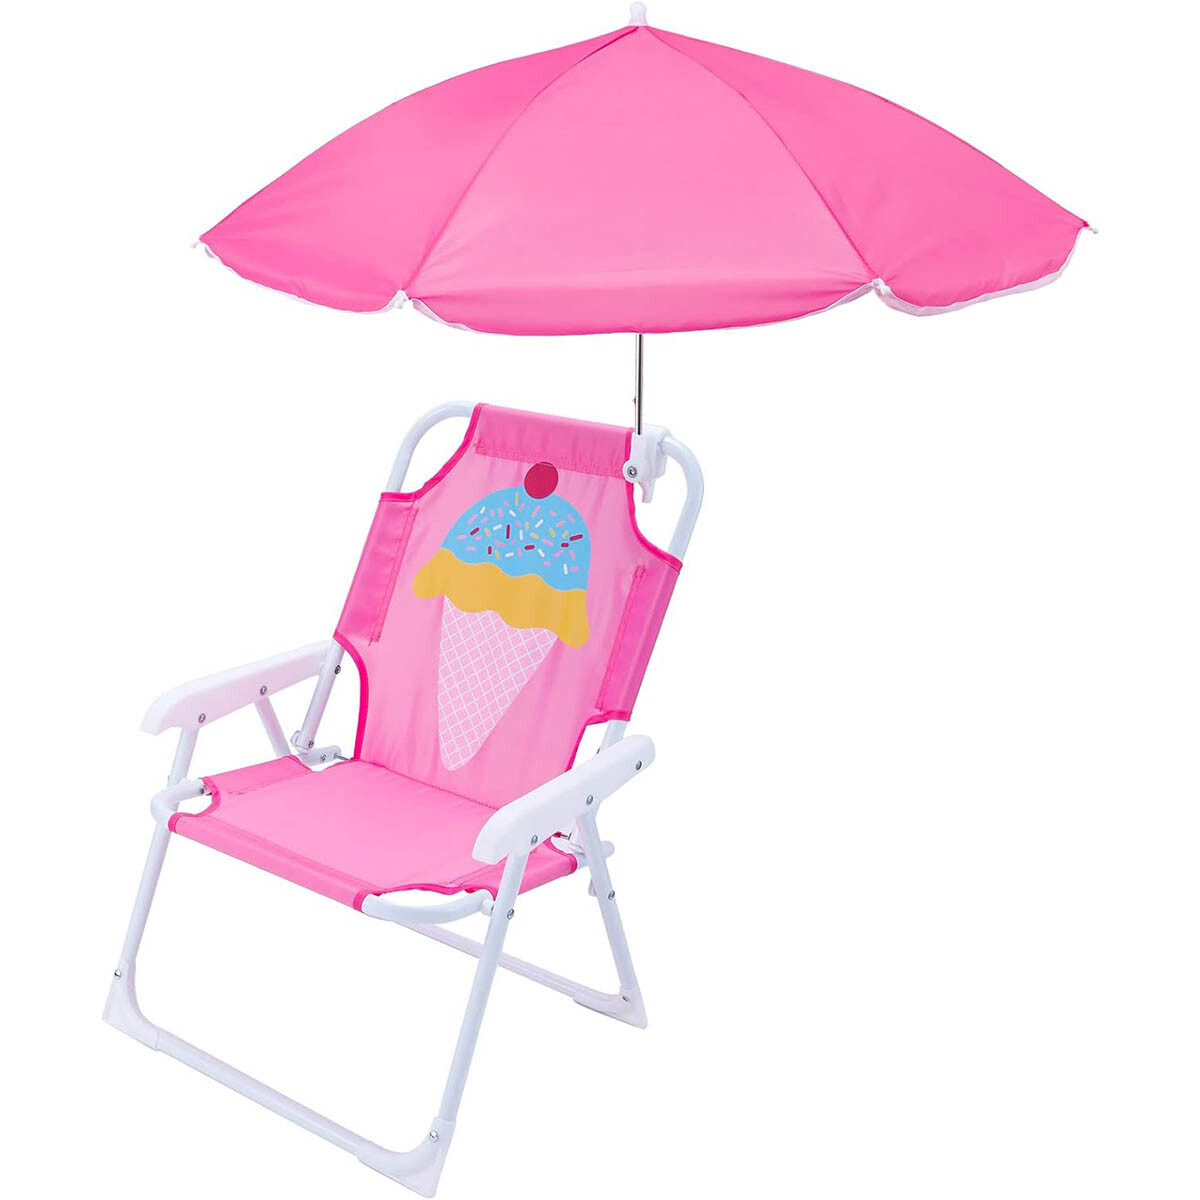 Silla Infantil Reposera Plegable Playa Con Sombrilla - Rosa 